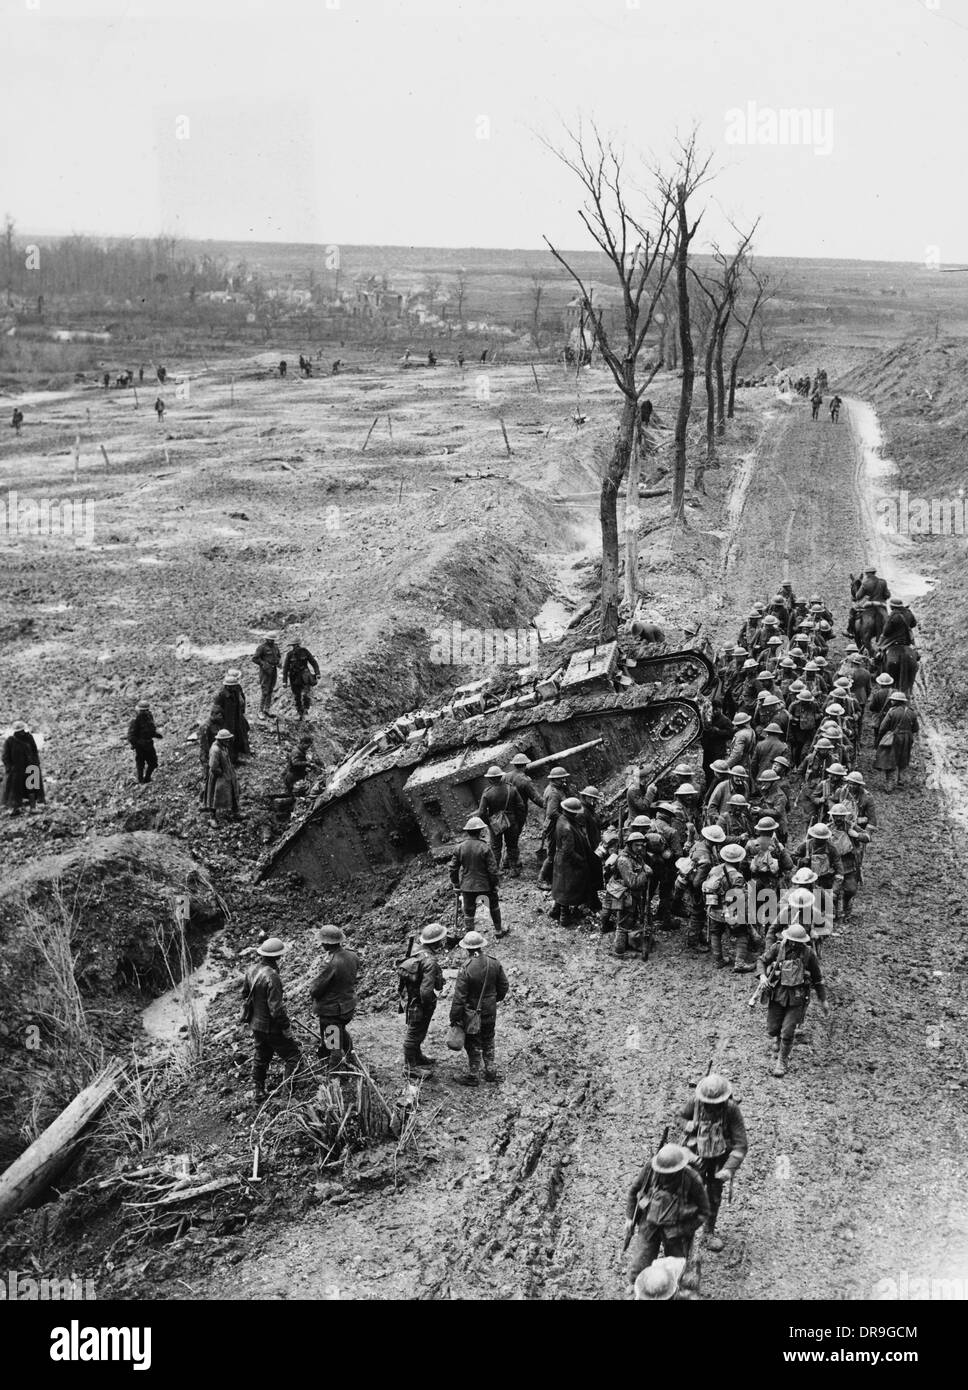 Battle of Arras (1917) - Wikipedia